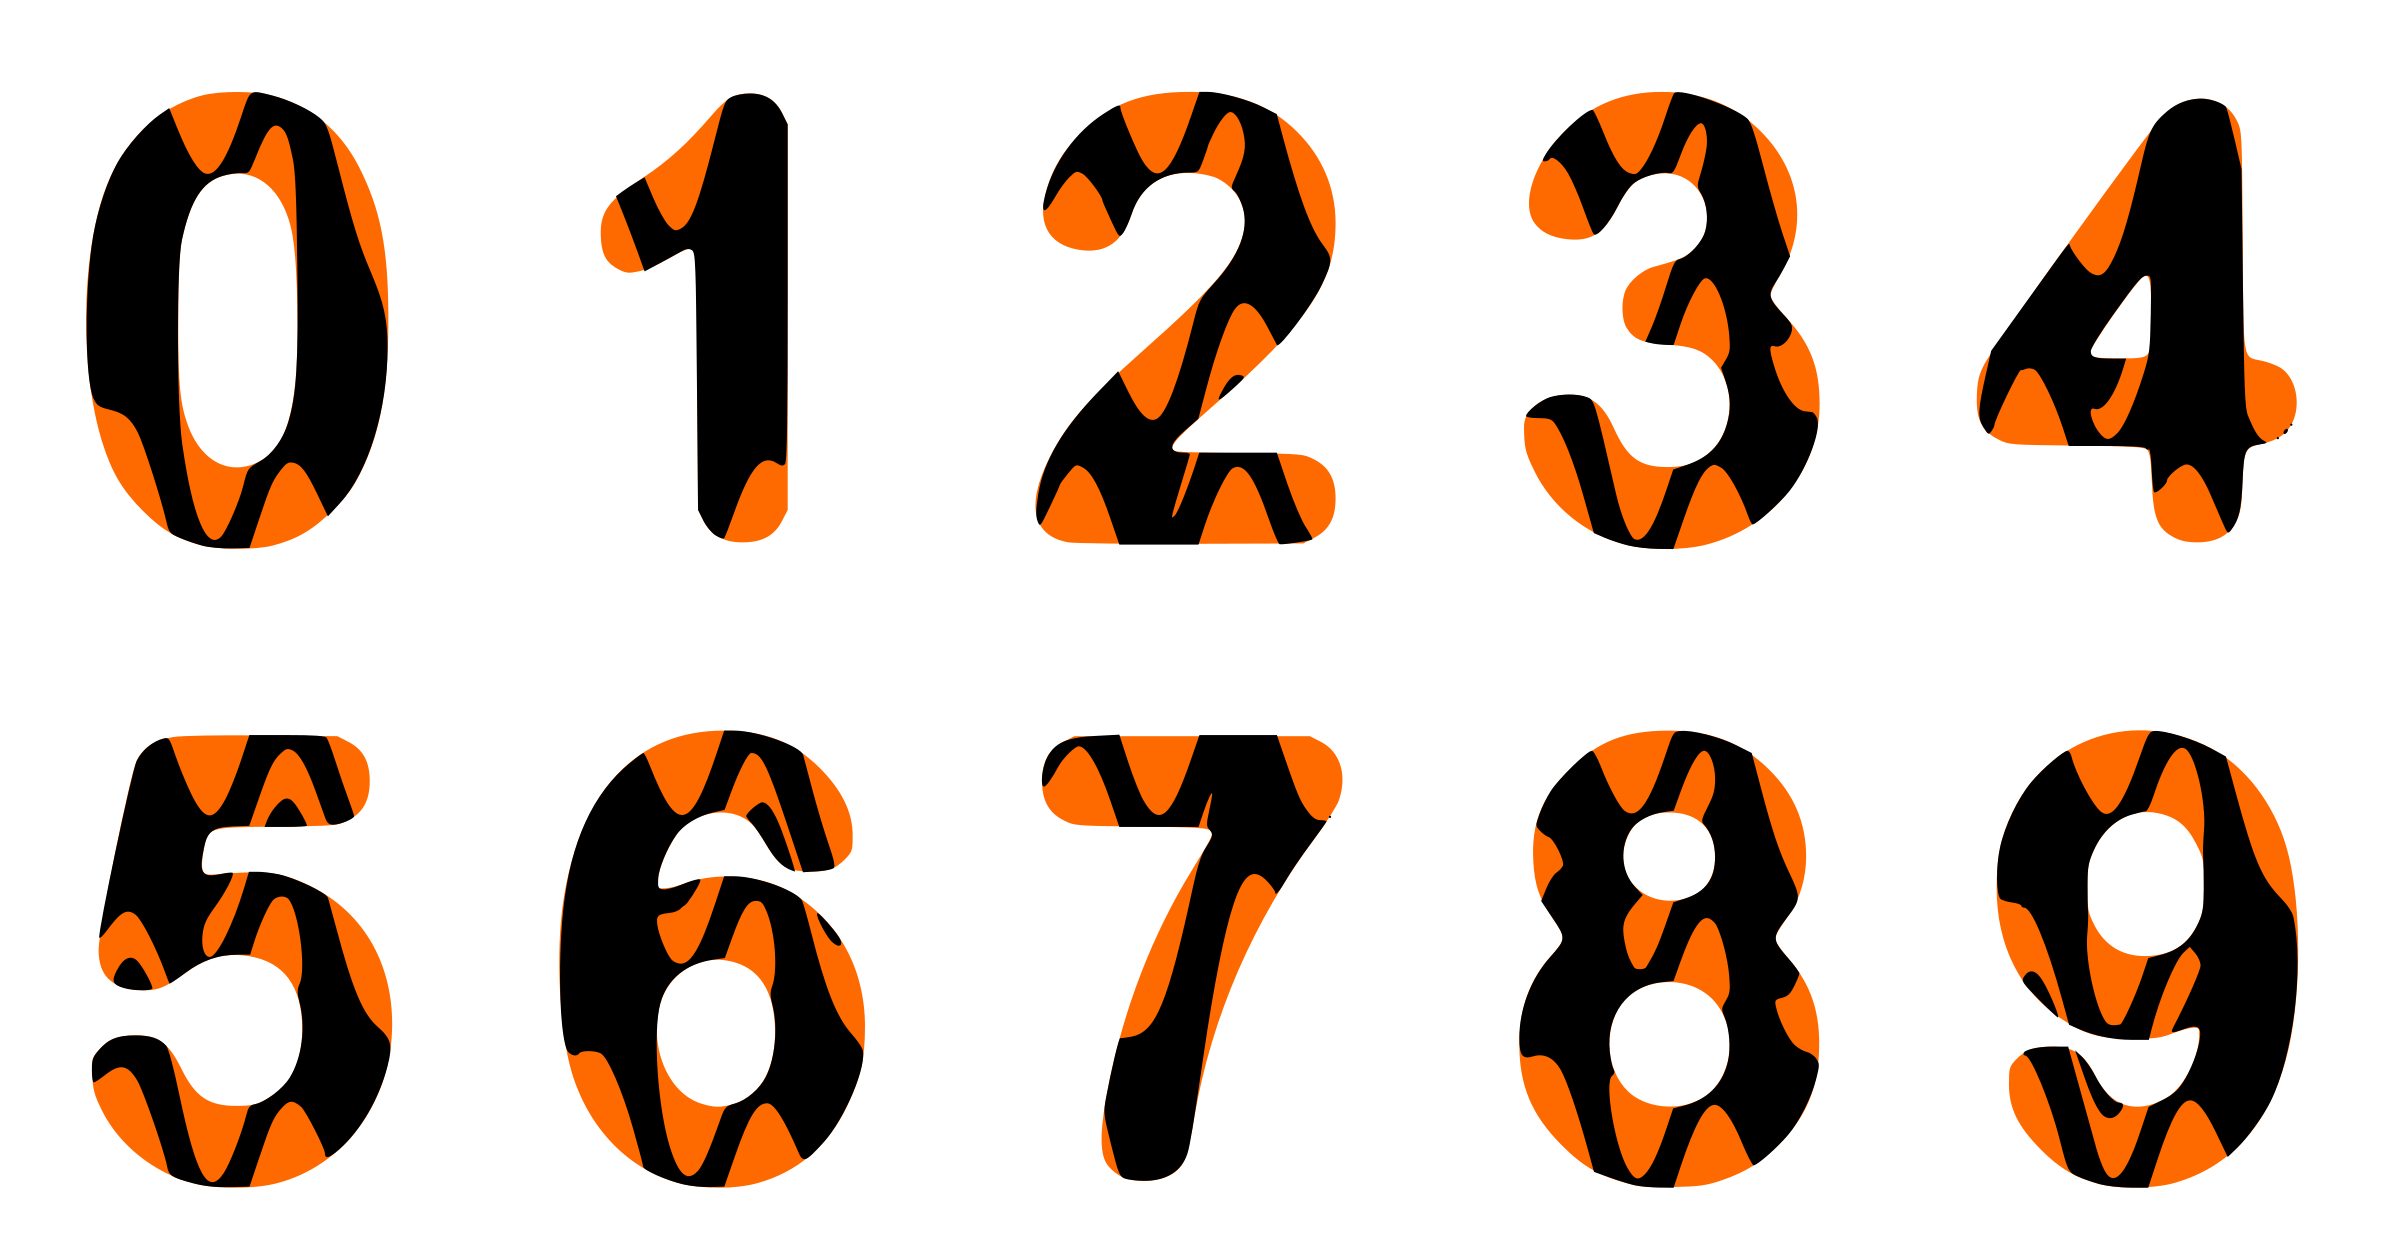 تصویر اعداد ریاضی با رنگ نارنجی و مشکی